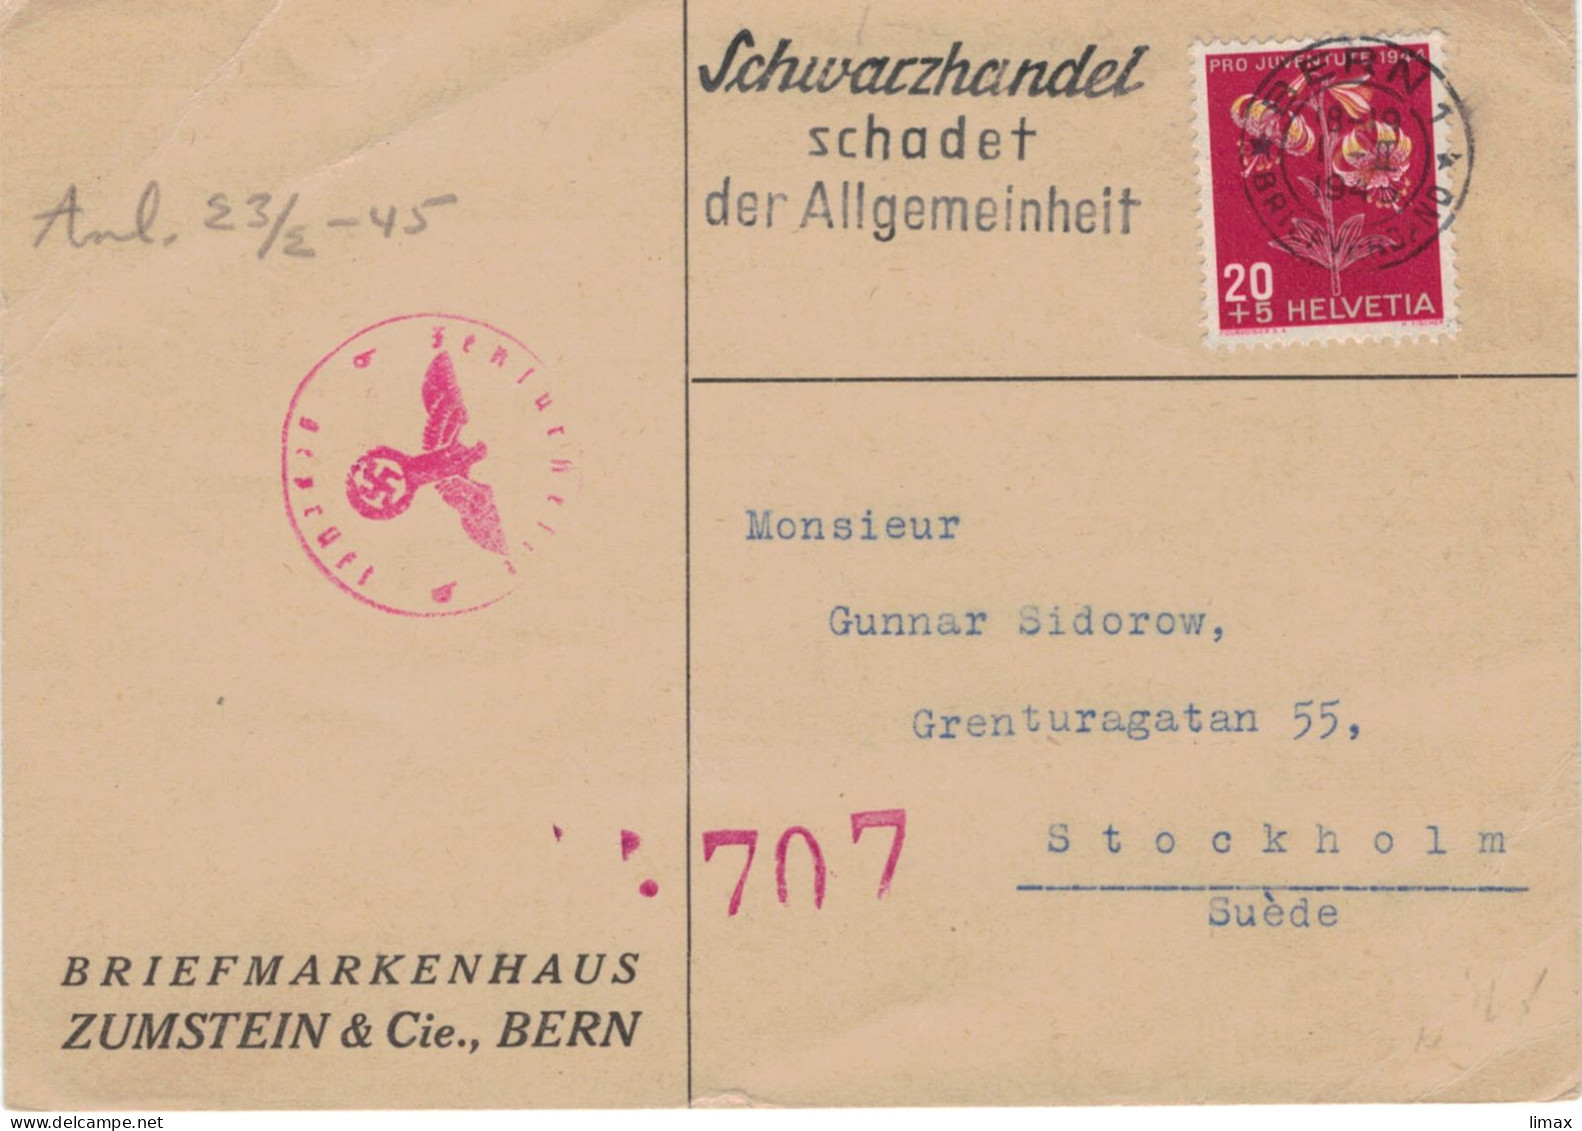 Zumstein Bern 17.II.1945 > Sidorow Stockholm - Zensur OKW - Schwarzhandel Schadet Der Allgemeinheit - Türkenbund-Lilie - Covers & Documents